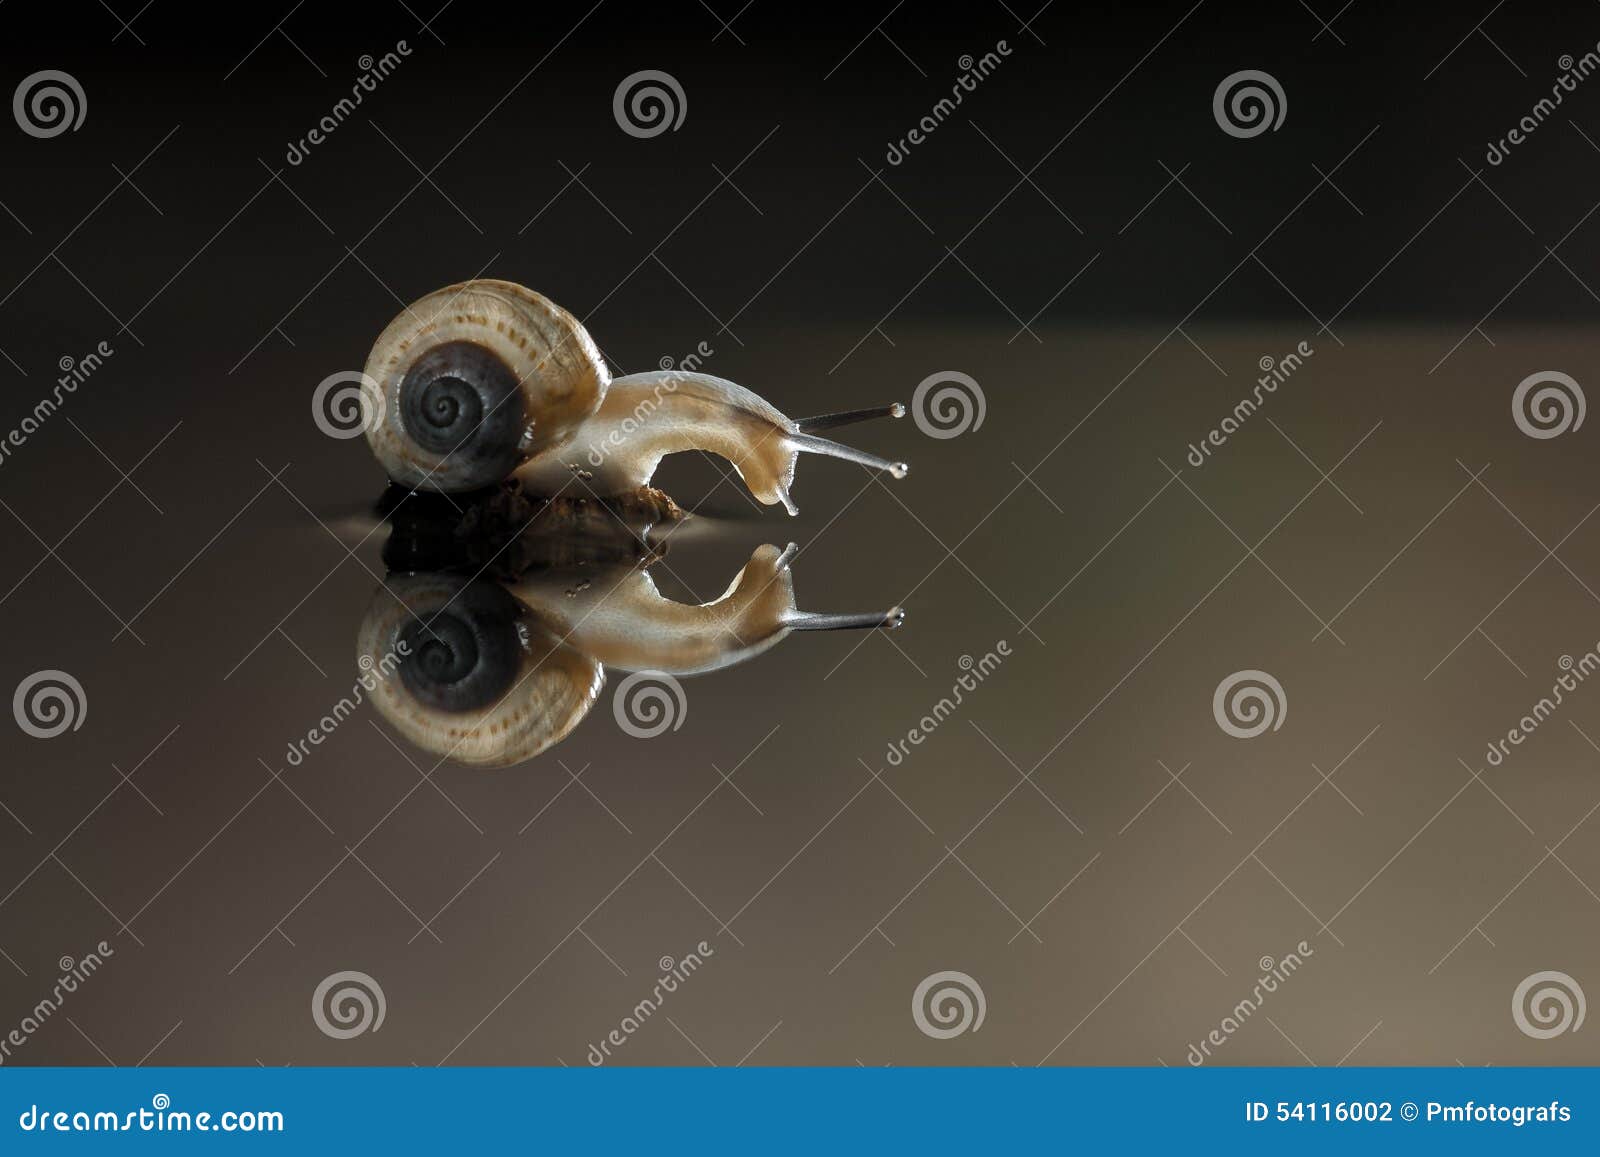 snail's mirror